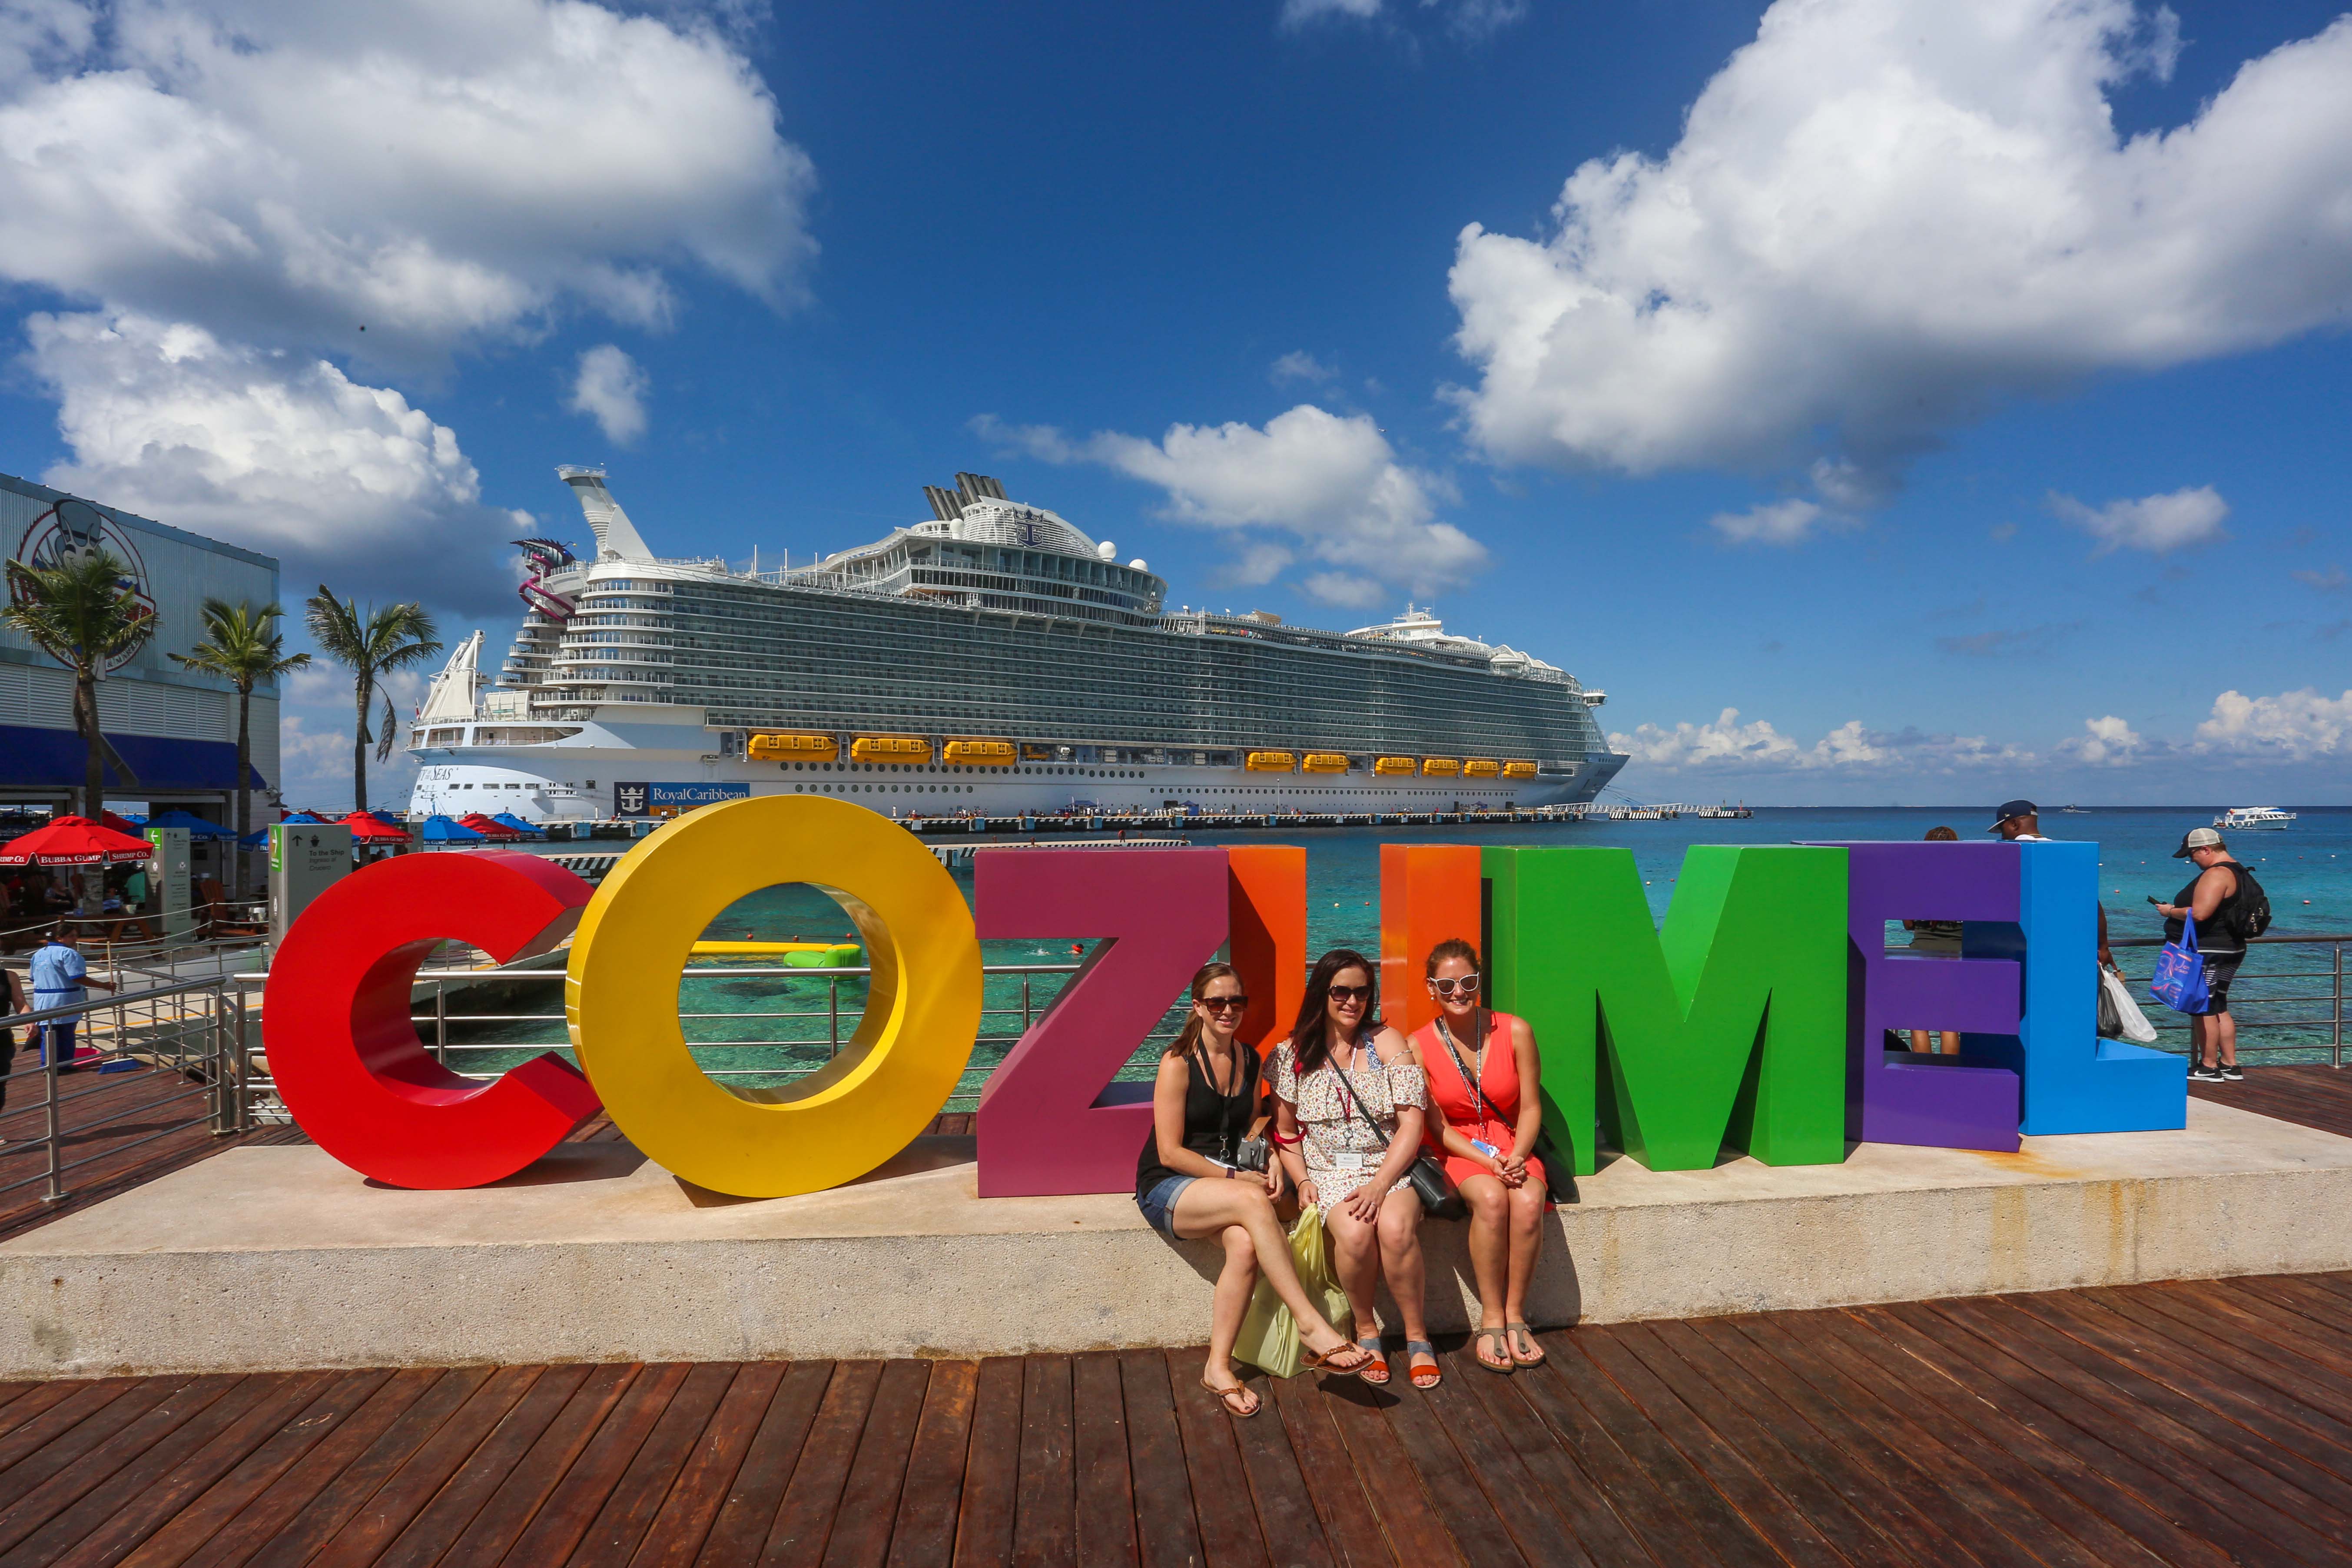 Crece 8% el turismo en Cozumel durante mayo - Revista Gente Quintana Roo